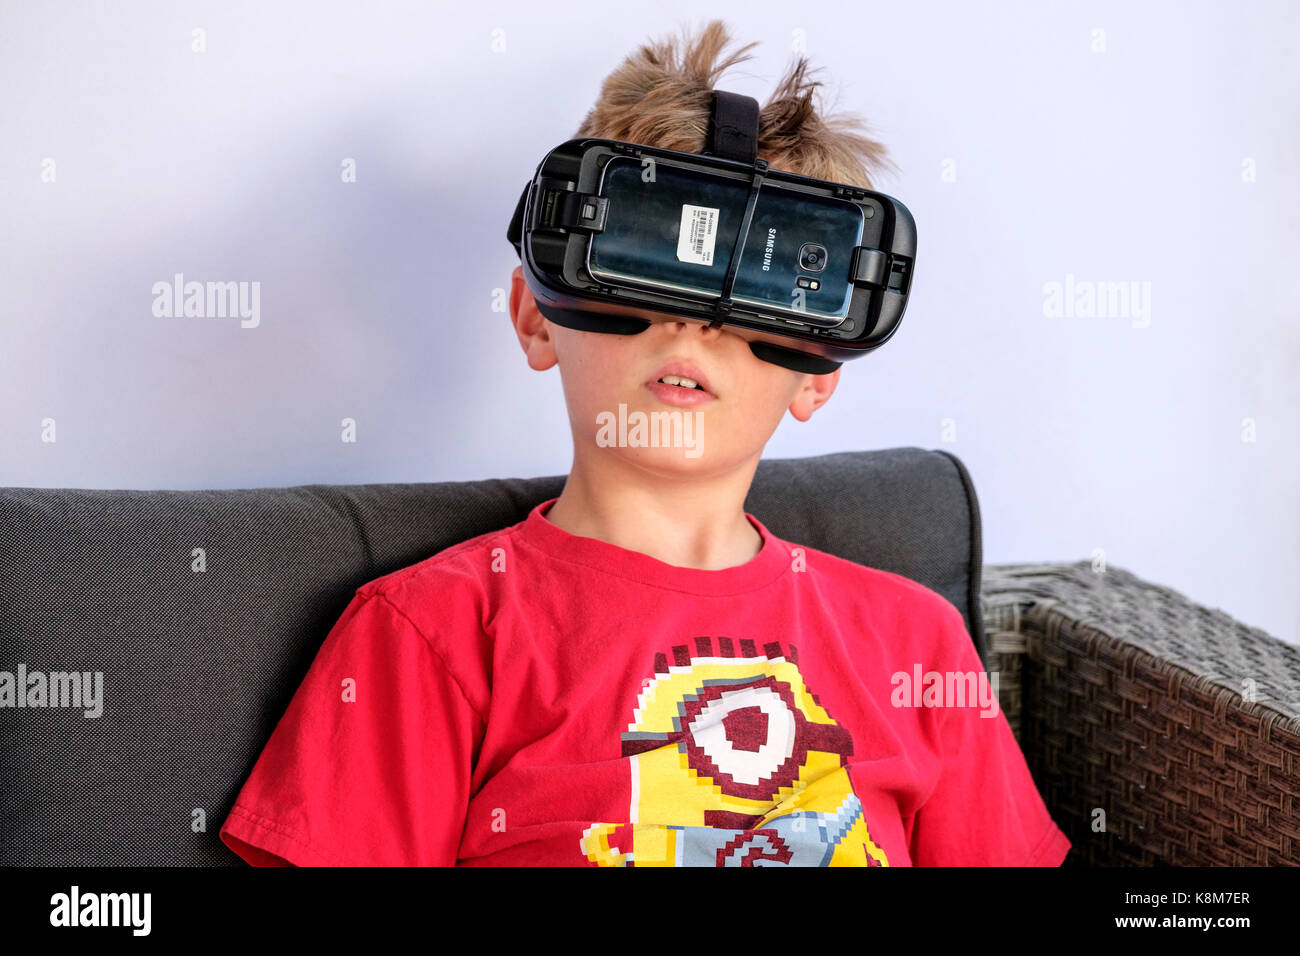 Nahaufnahme eines jungen Jungen mit Oculus Gear VR-Headset, Virtual Reality (VR)-Ausrüstung mit Samsung-Handy. Stockfoto